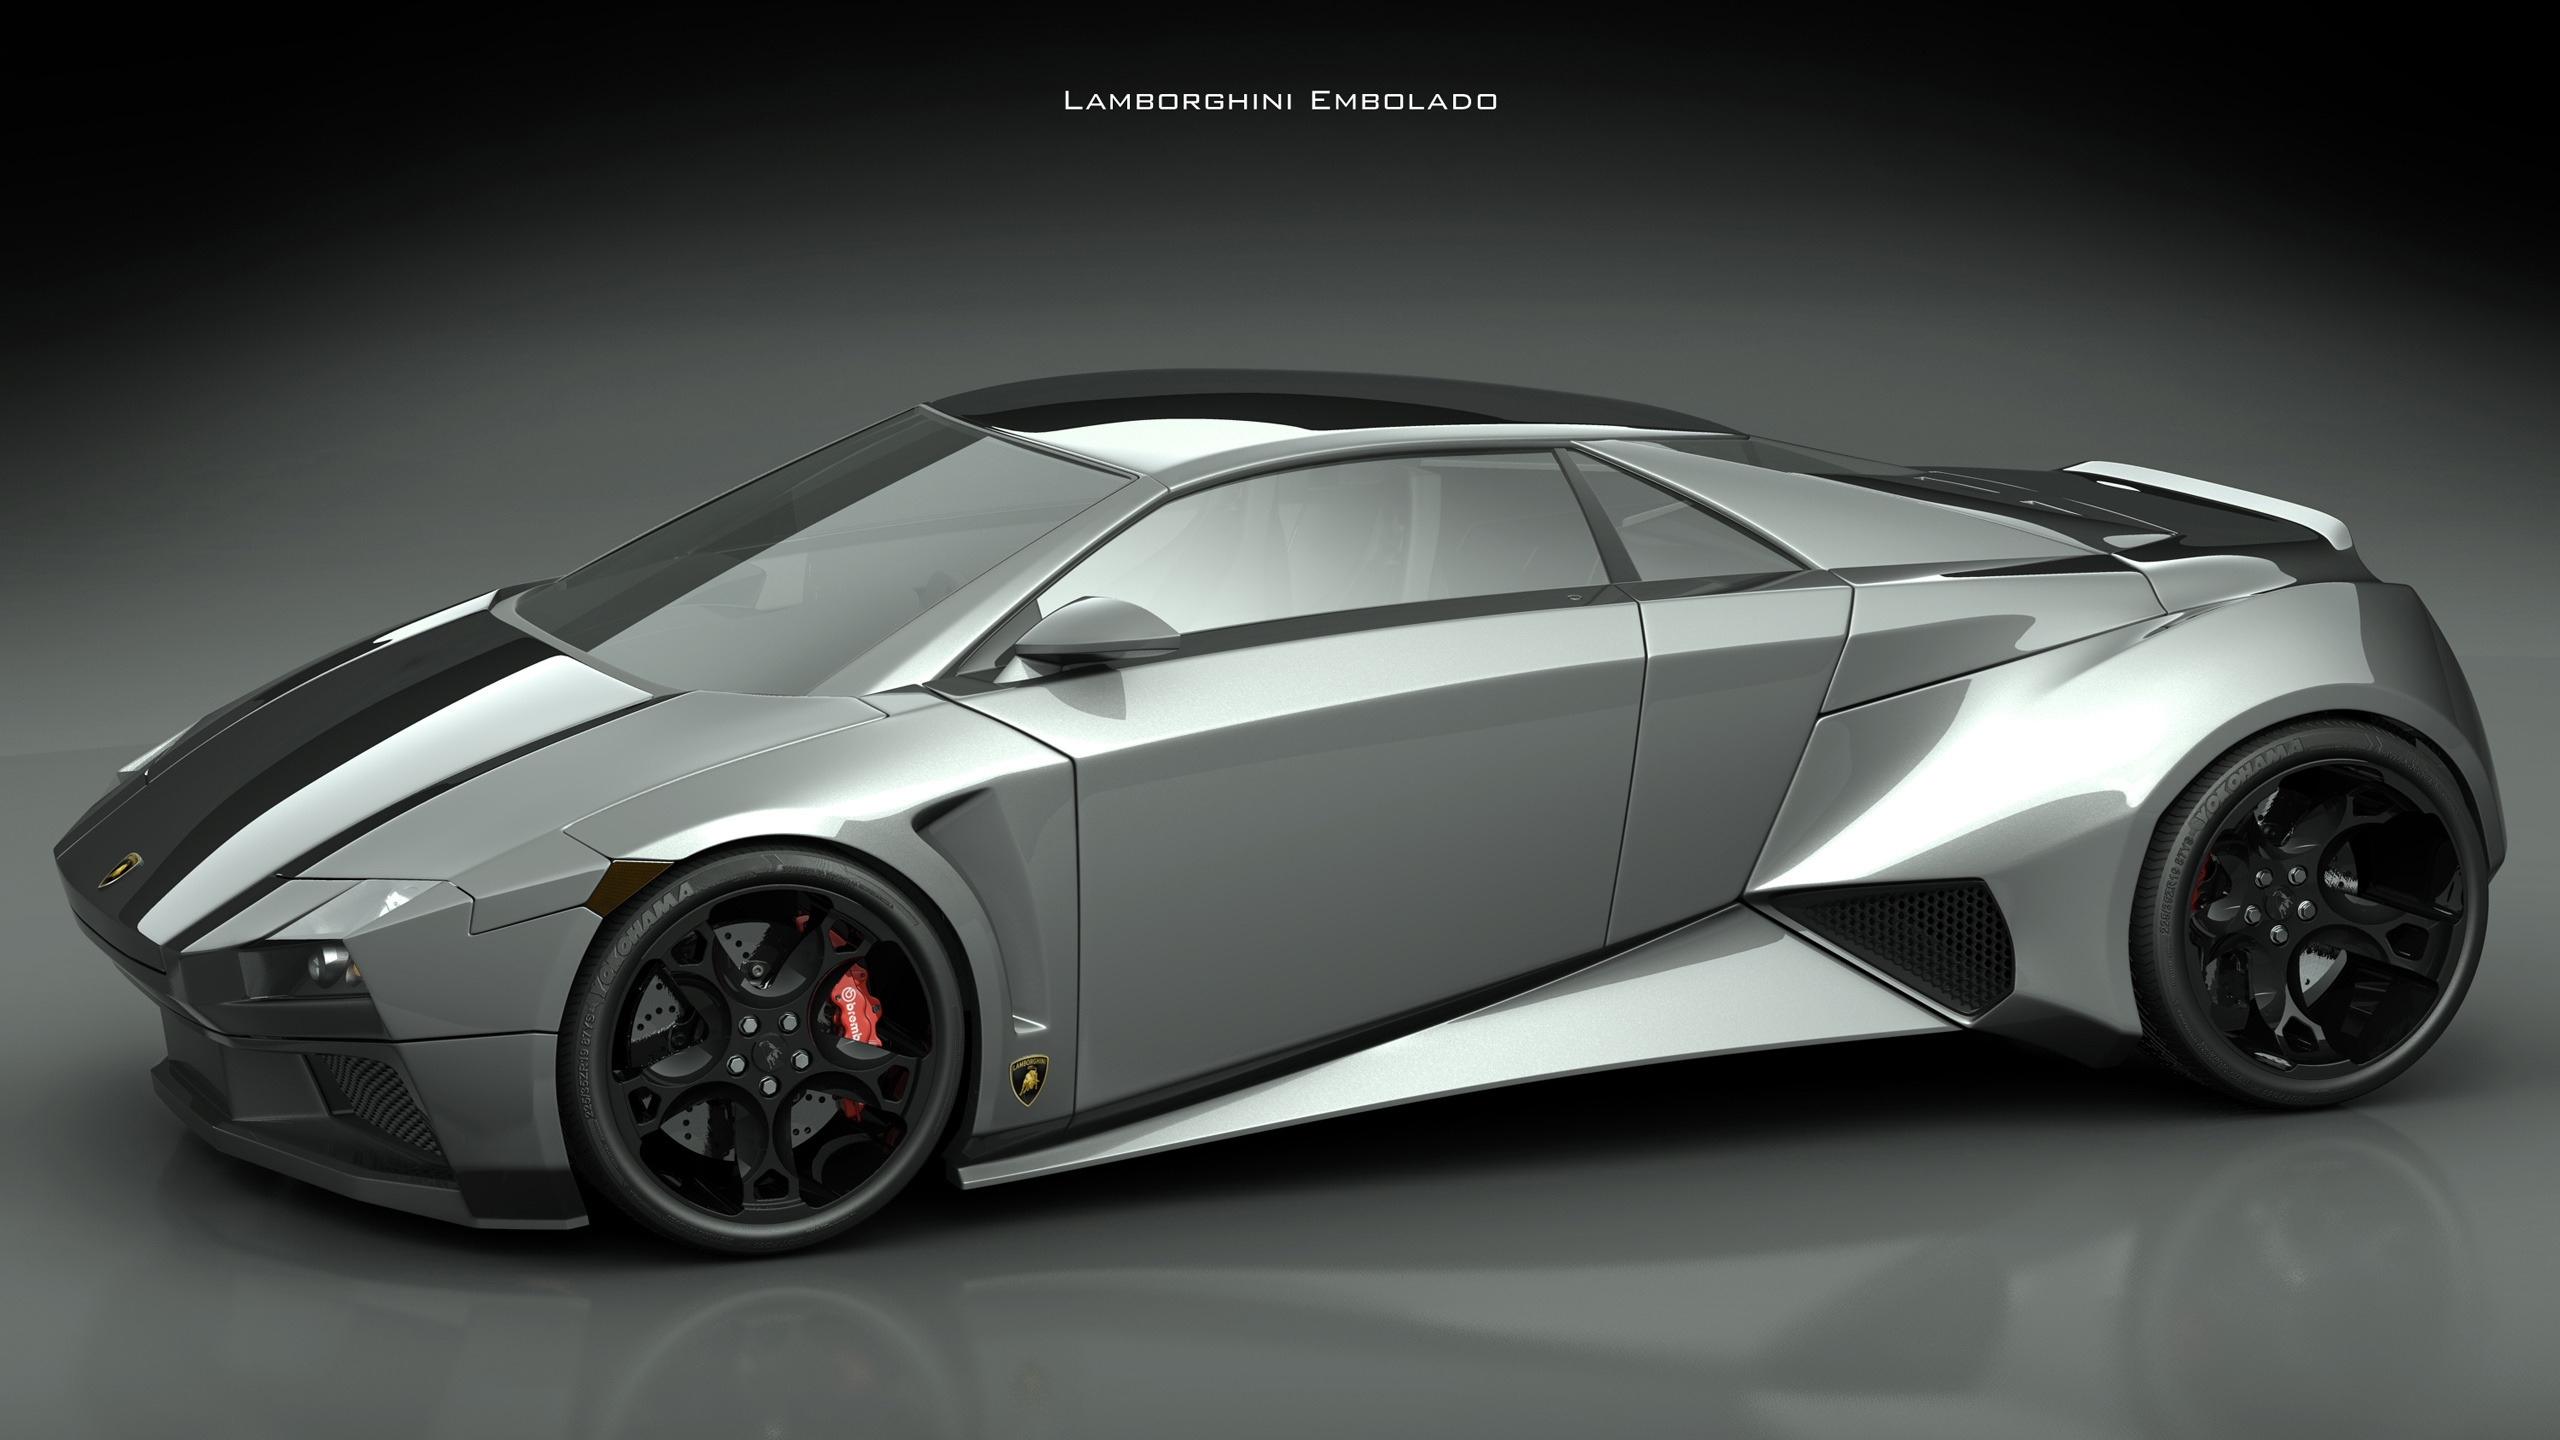 Lamborghini Embolado for 2560x1440 HDTV resolution